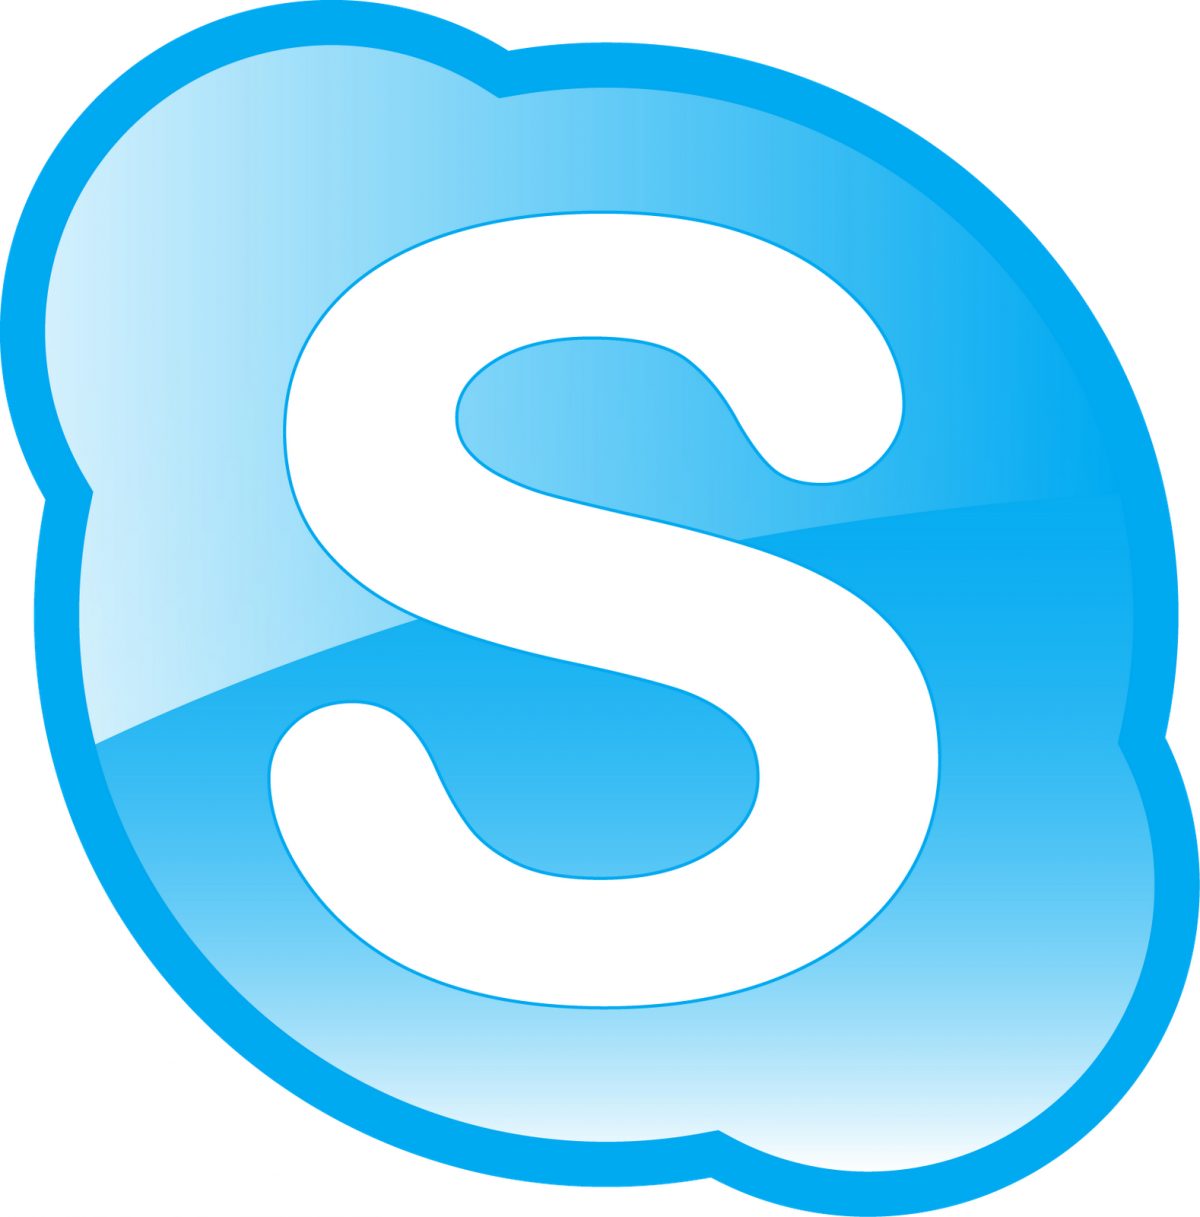 skype download win 7